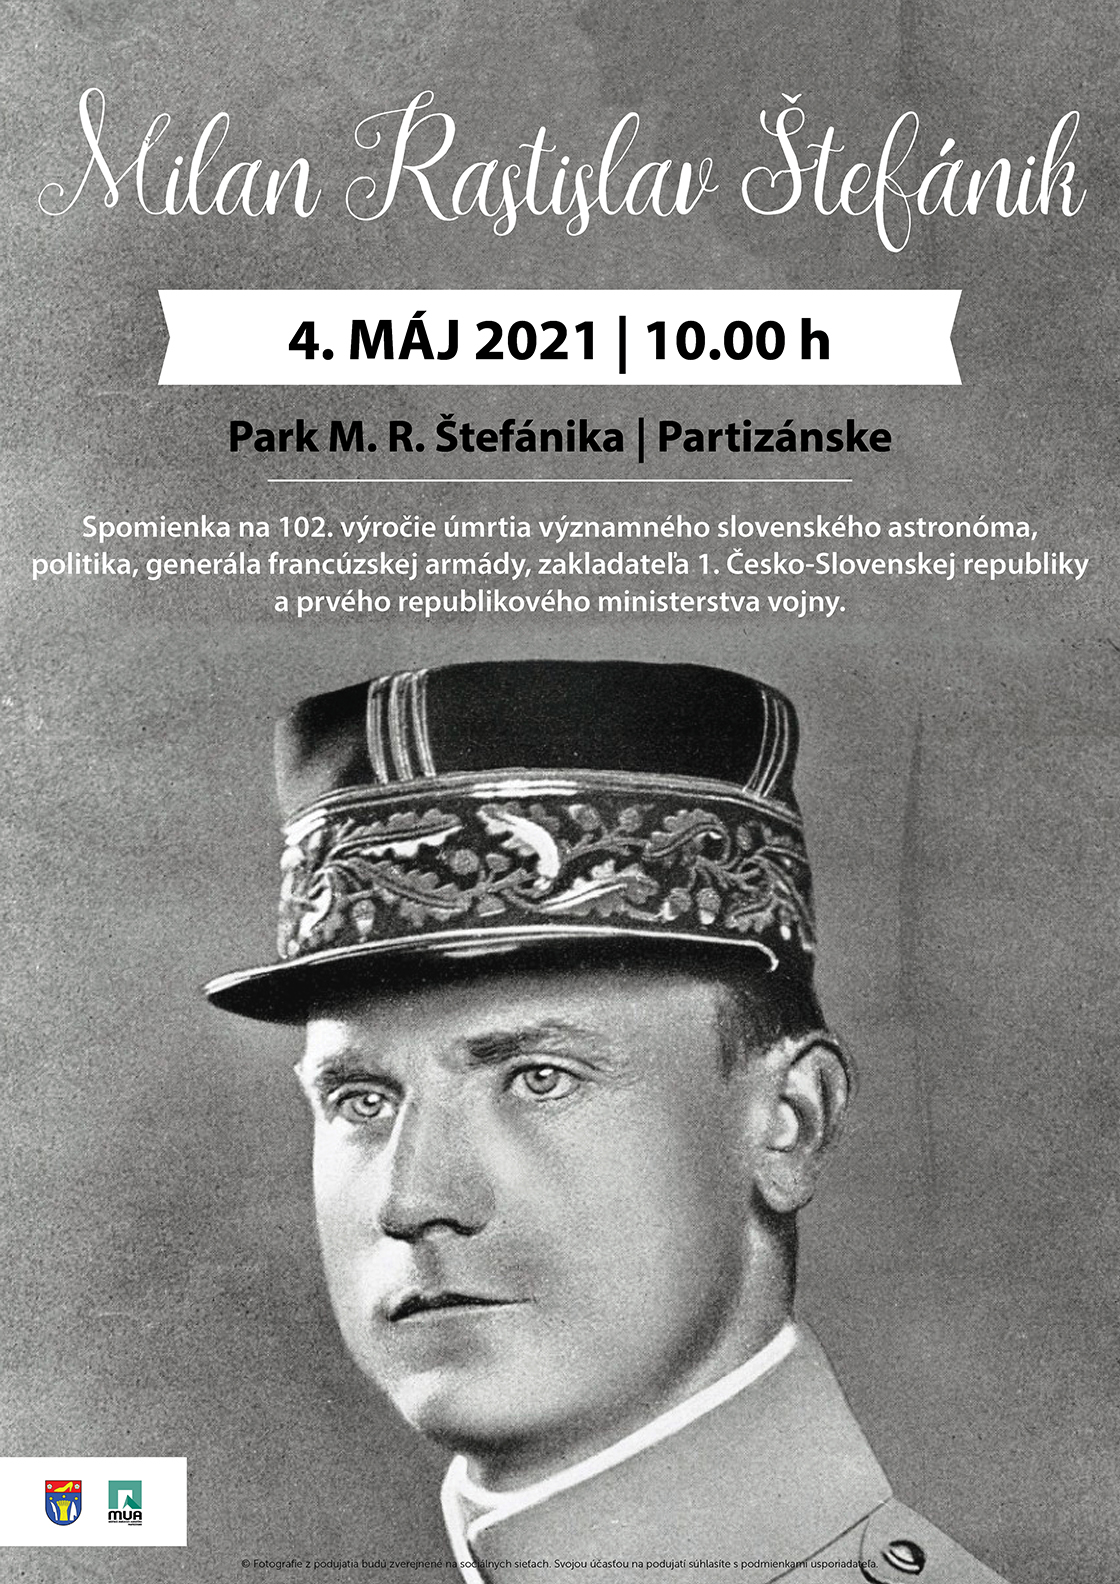 NOV - - - Spomienka na 102. vroie mrtia generla Milana Rastislava tefnika 2021 Partiznske